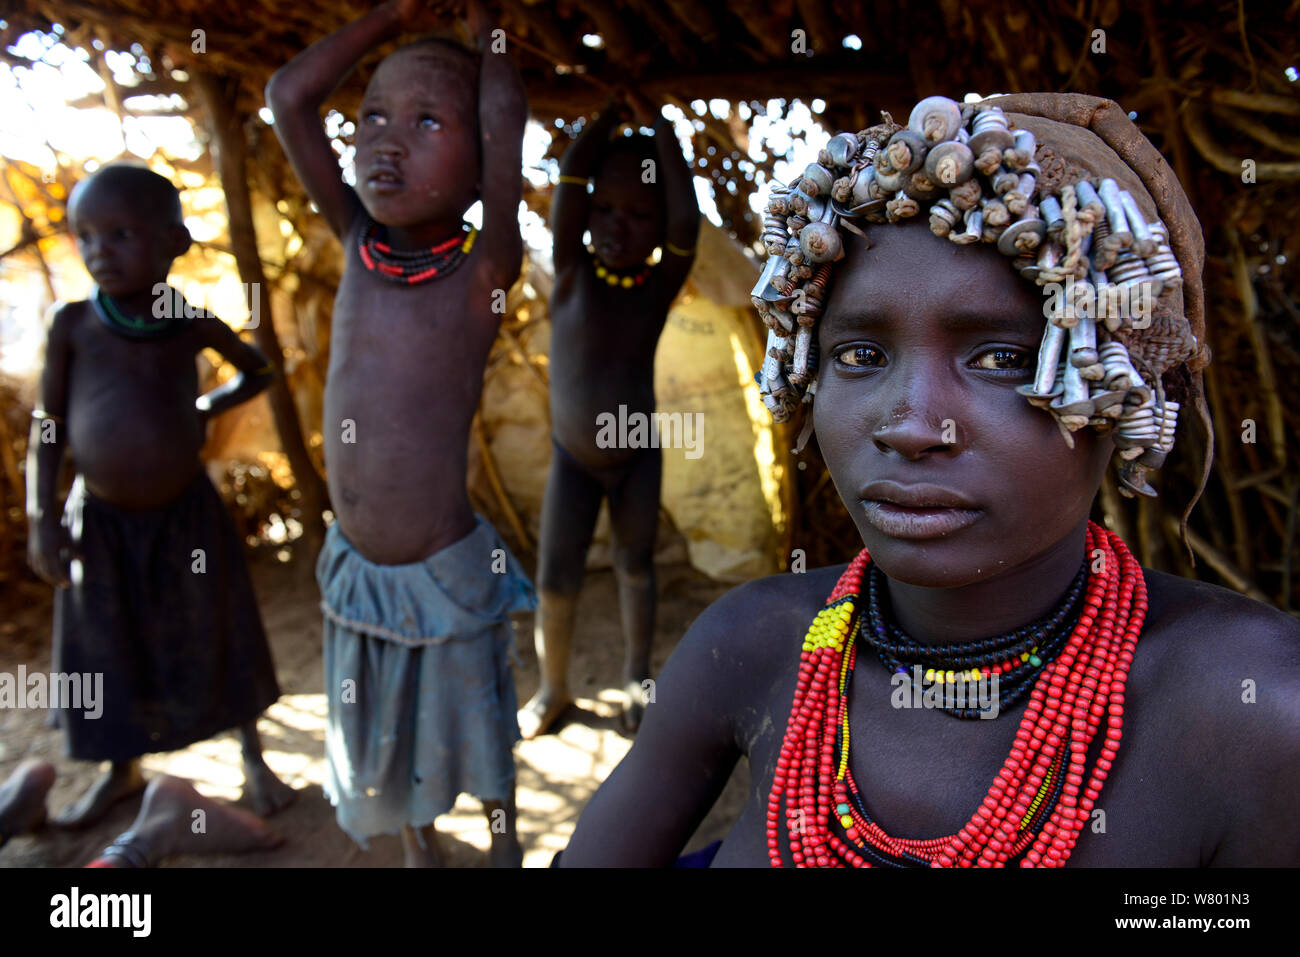 Dassanech Menschen mit ihrer traditionellen Kleidung und Schmuck. Gebiet des Stammes dassanech. Untere Omo Tal. Äthiopien, November 2014 Stockfoto